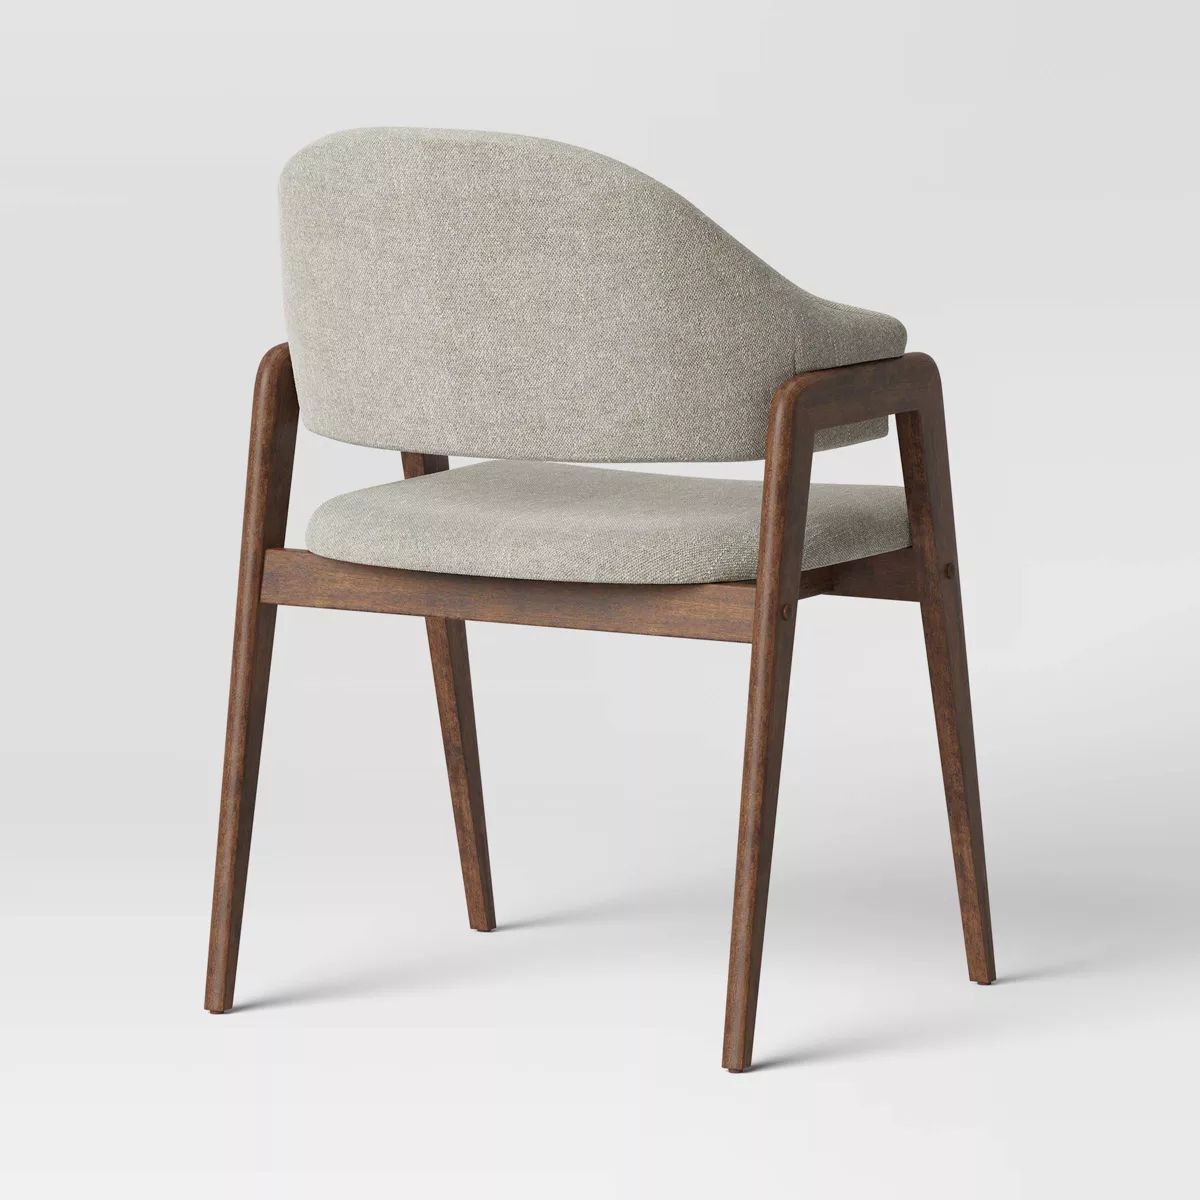 Ingleside Open Back Upholstered Wood Frame Dining Chair - Threshold™ | Target